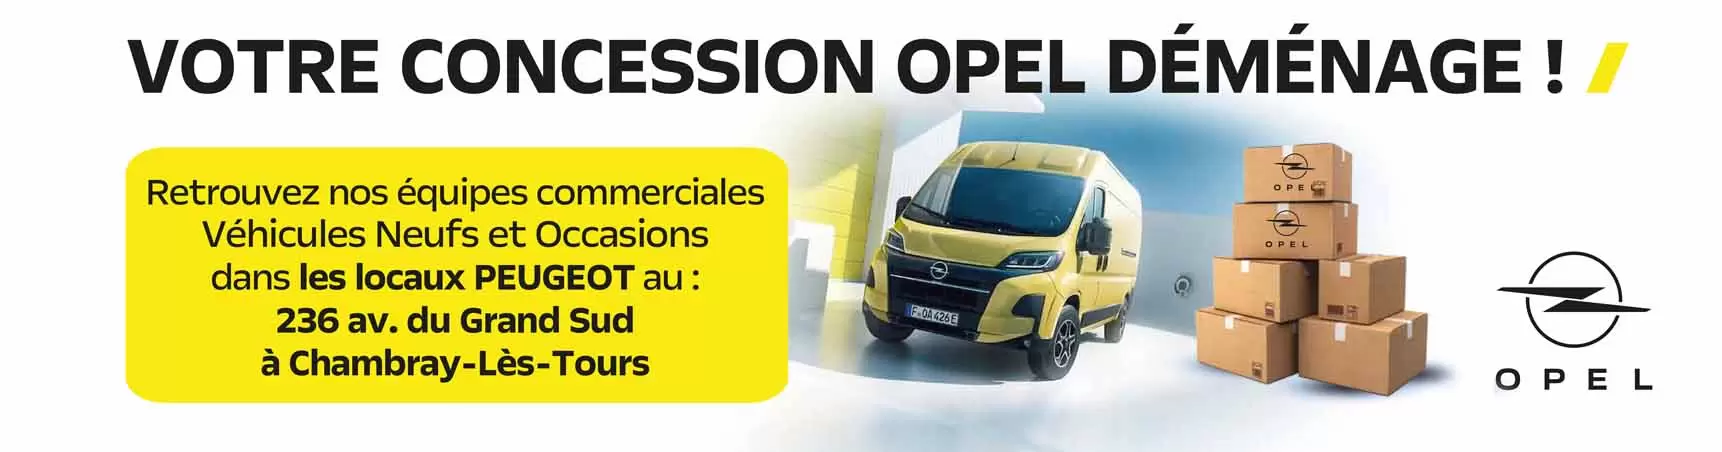 Bannière de déménagement - Opel Tours